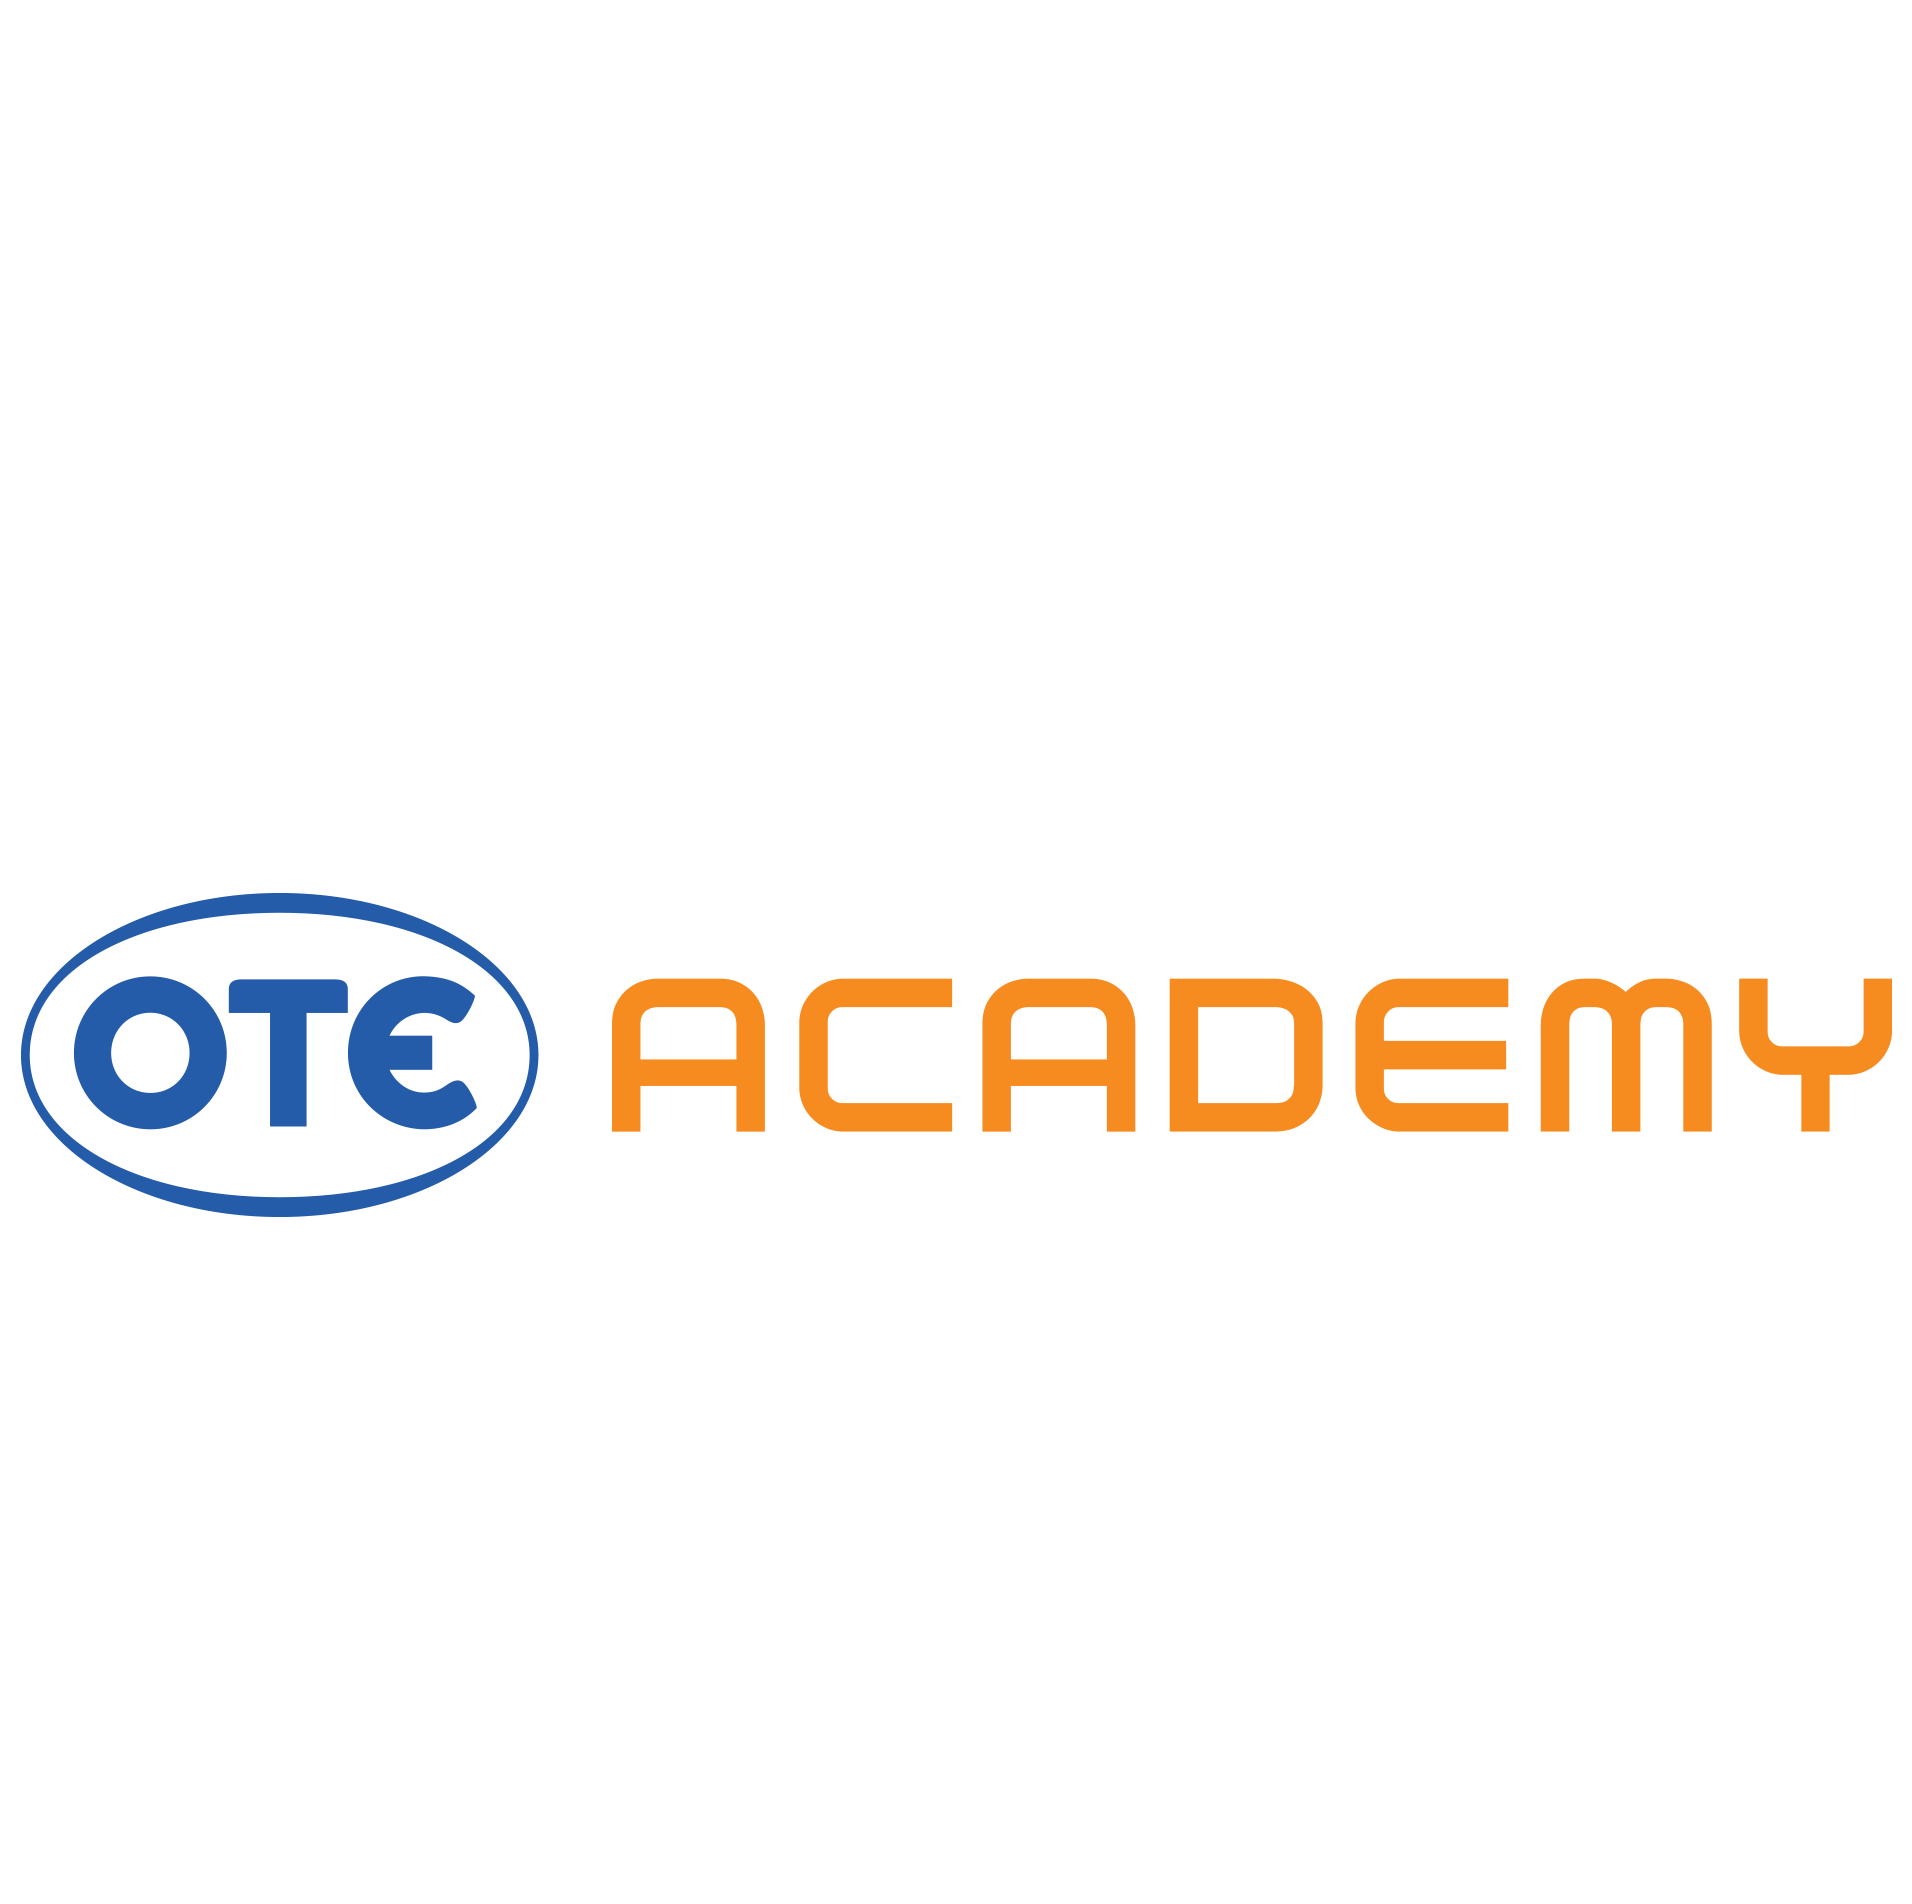 OTE Academy logo